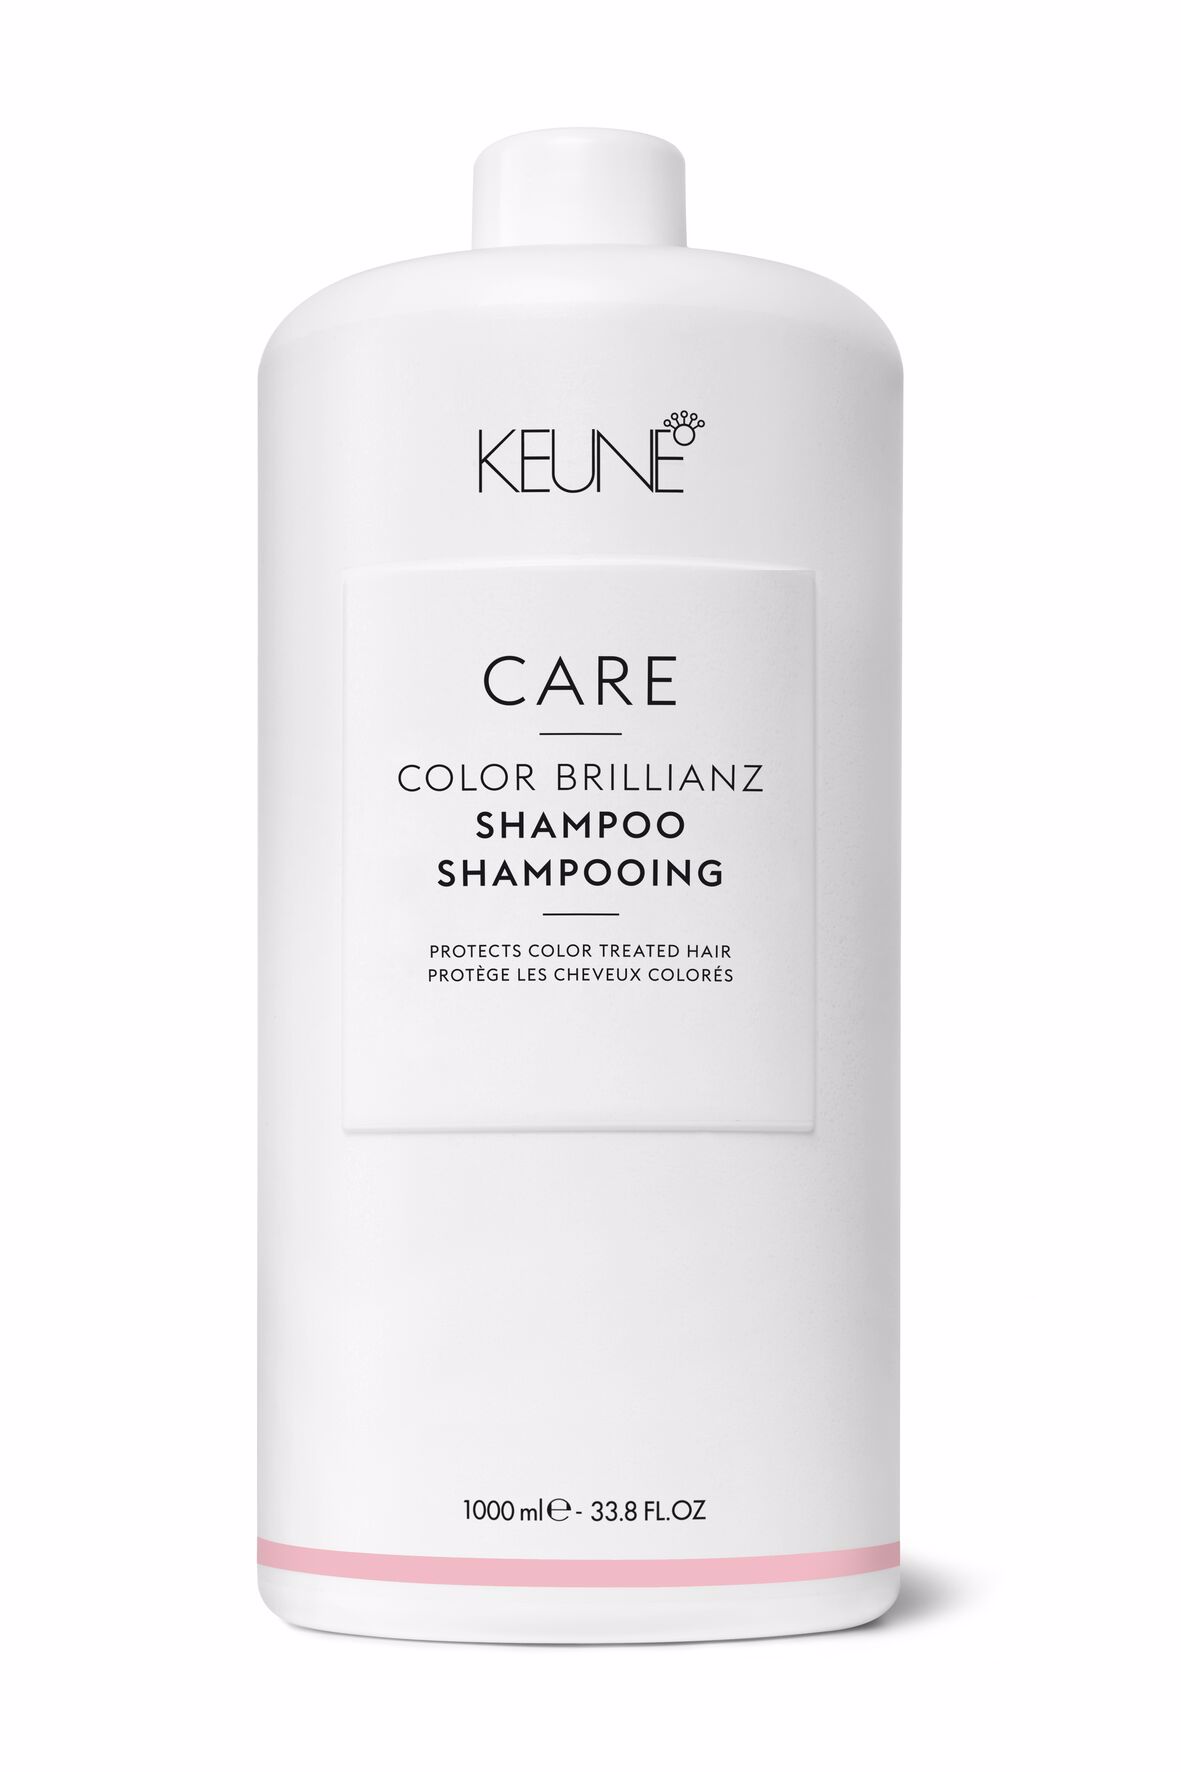 Color Brilianz Shampoo - Ihre Wahl für dauerhafte Farbintensität bei coloriertem Haar. Weitere Produkte für gefärbtes Haar finden Sie auf keune.ch.